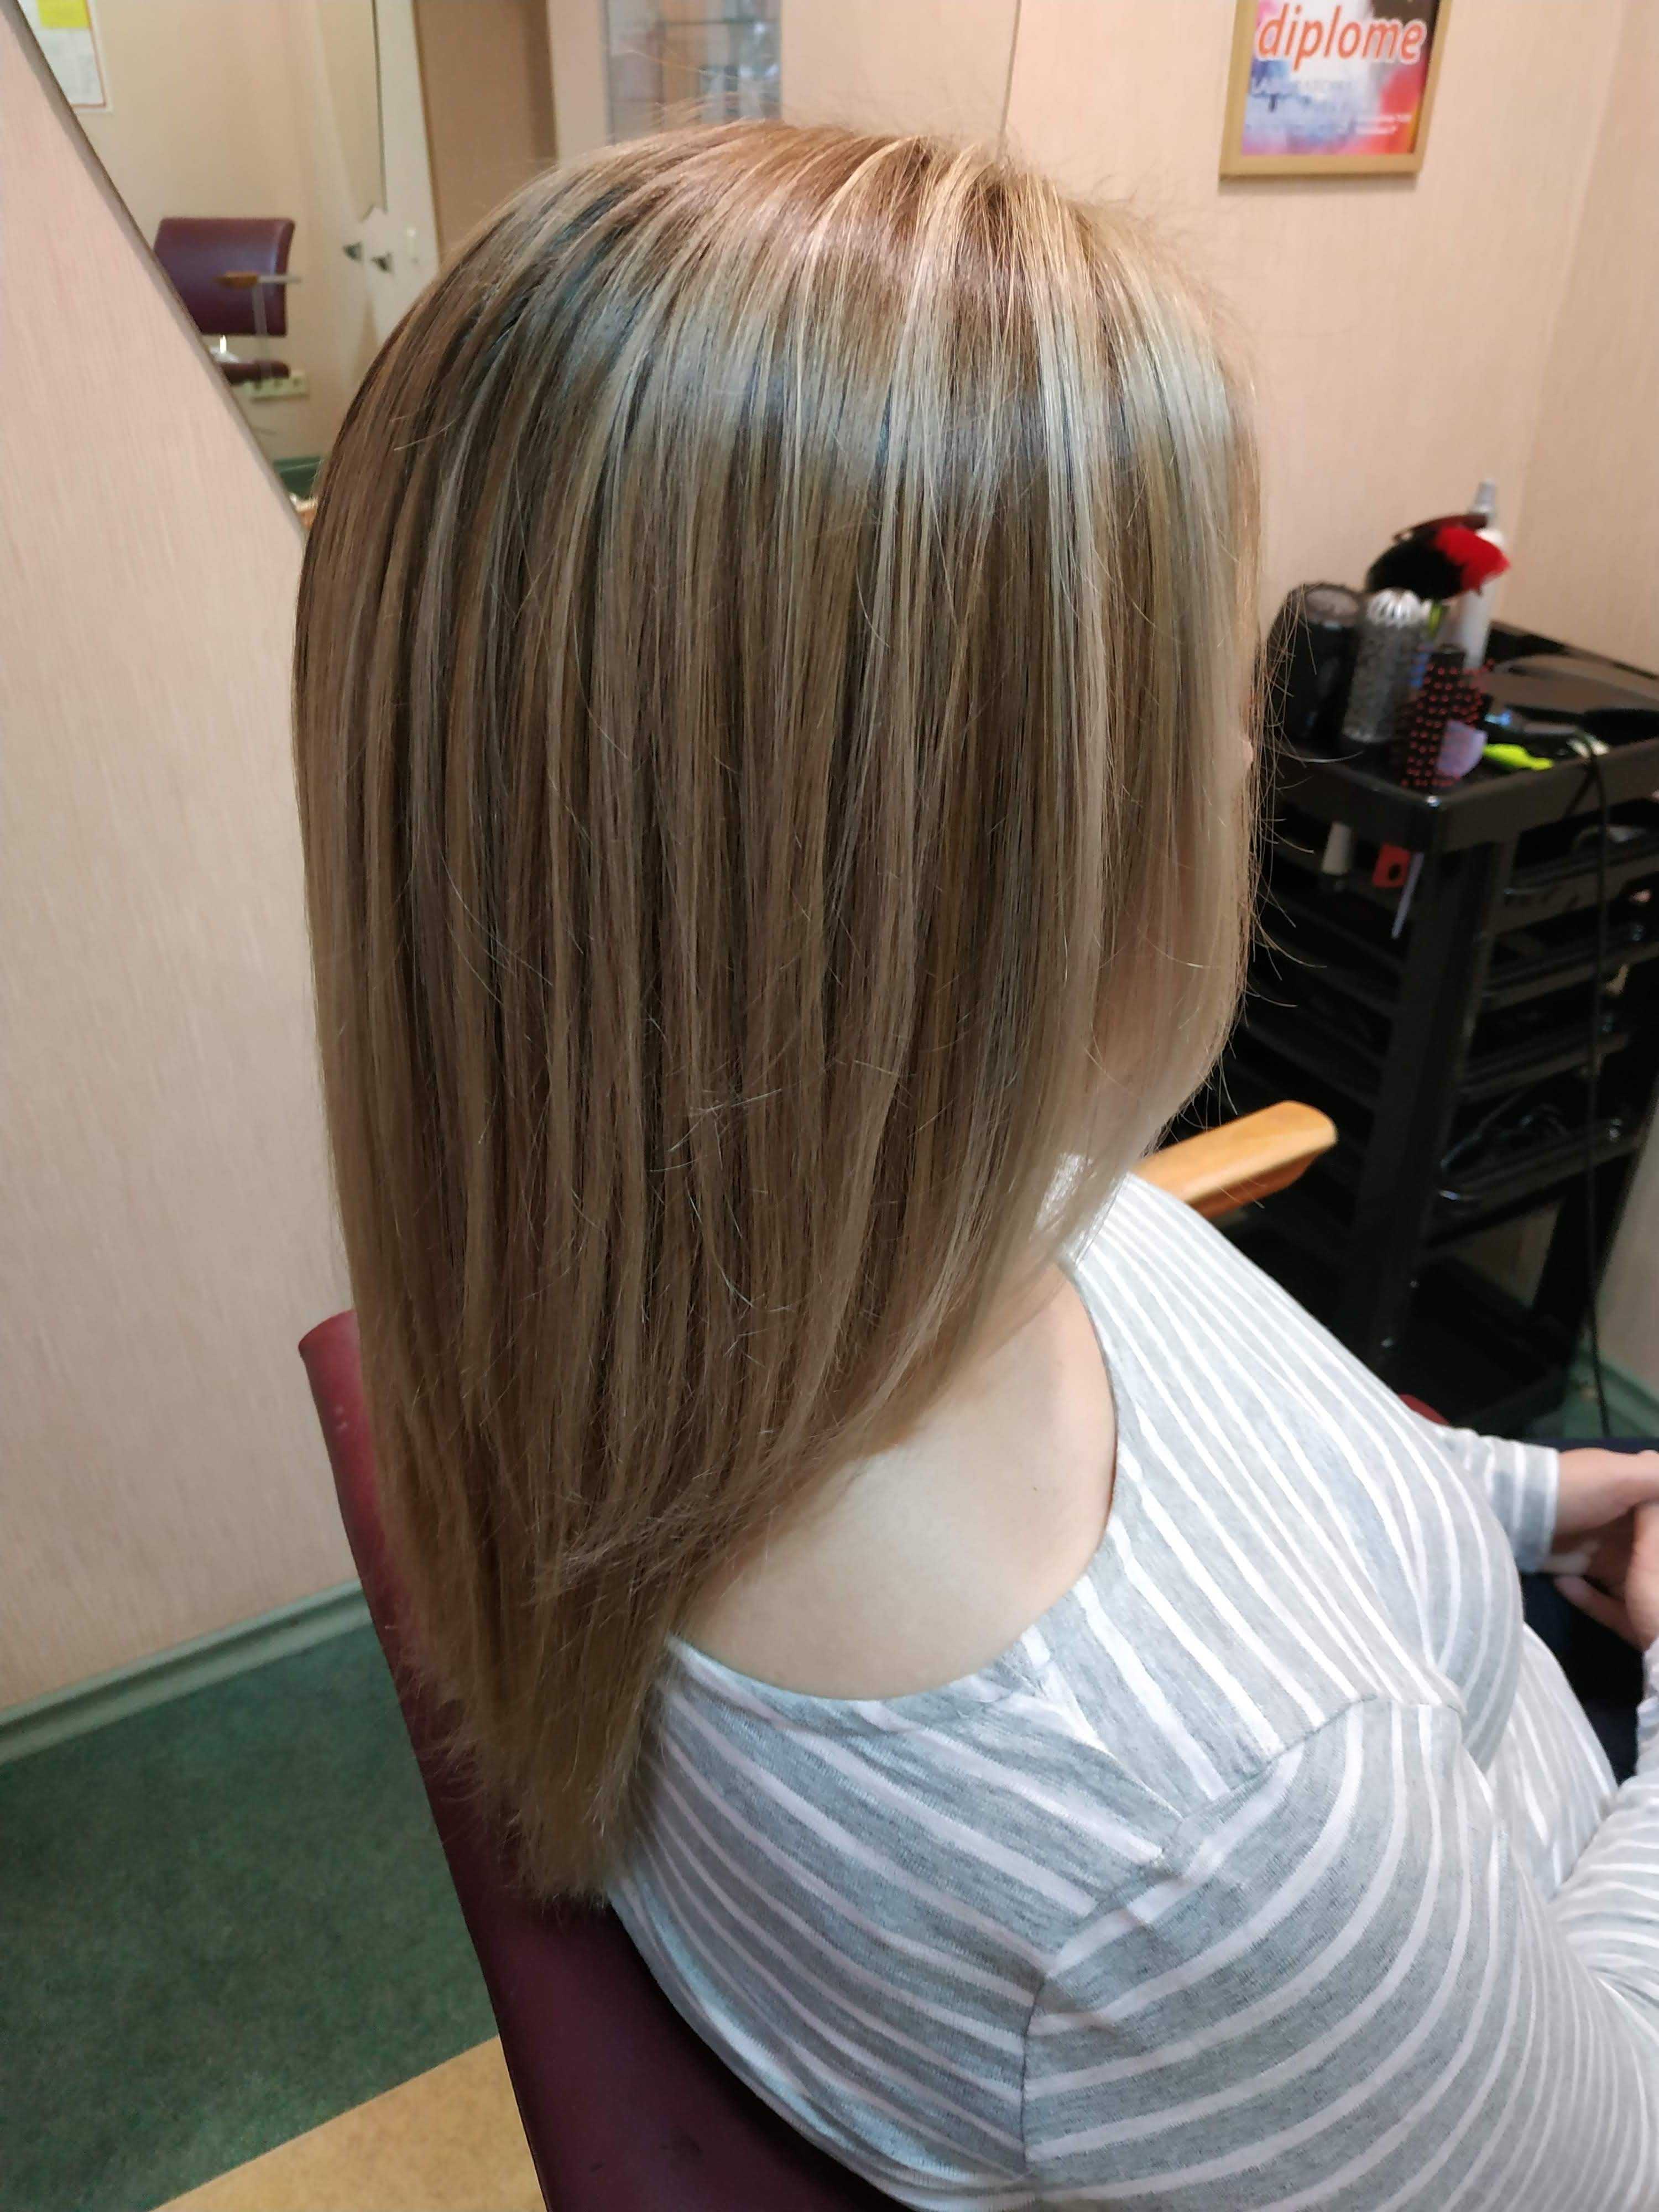 Тонкие волосы мелирование редкие до и после фото